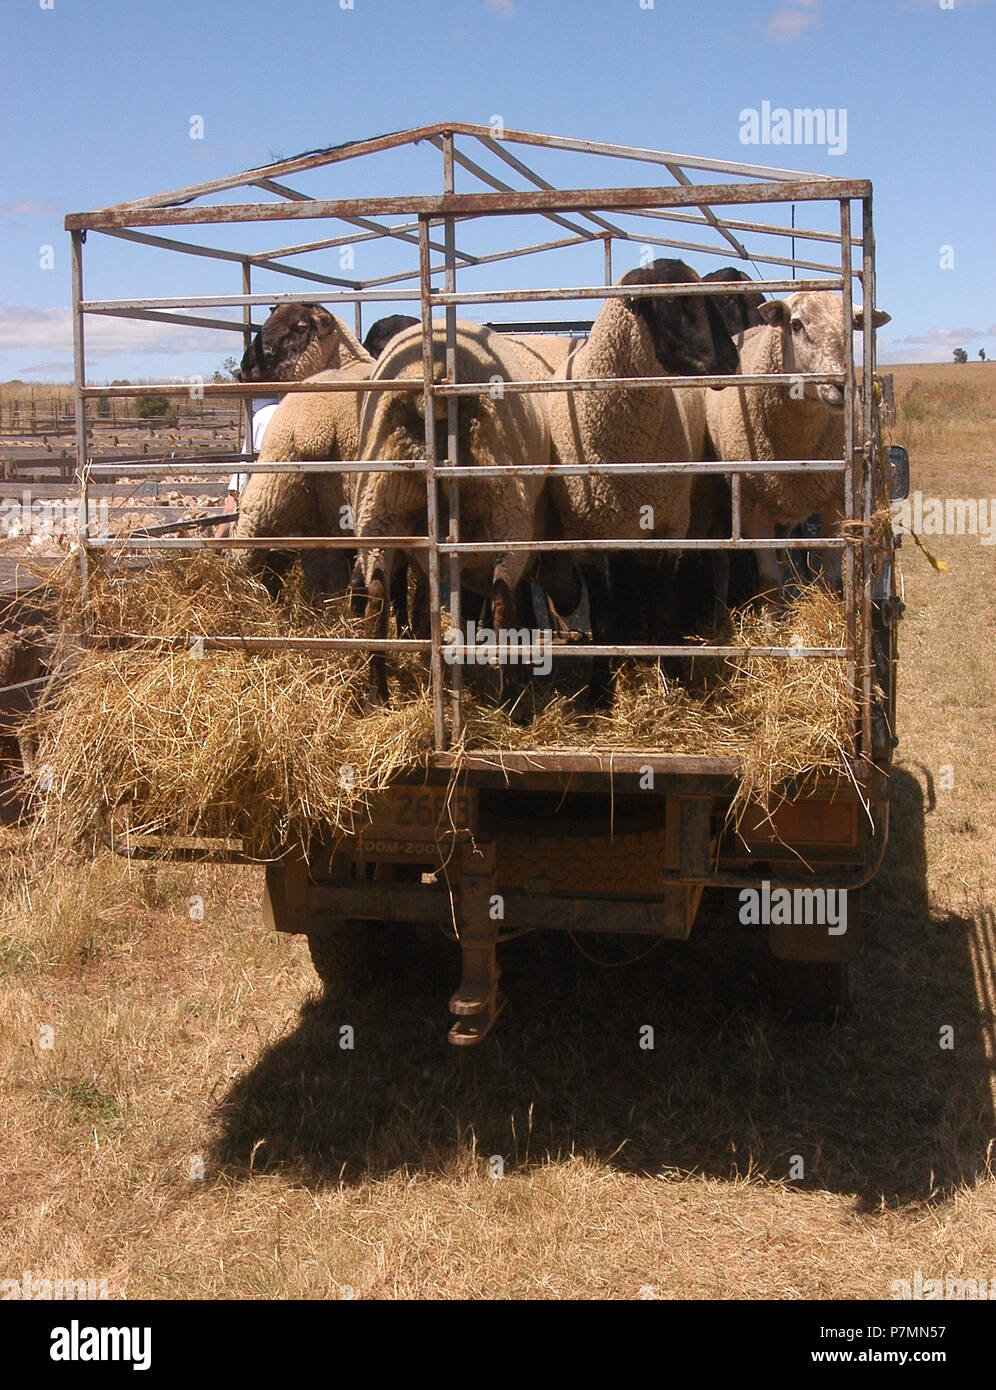 Rams im Vieh Anhänger, ländliche Schafe Vertrieb, Tasmanien, Australien Stockfoto